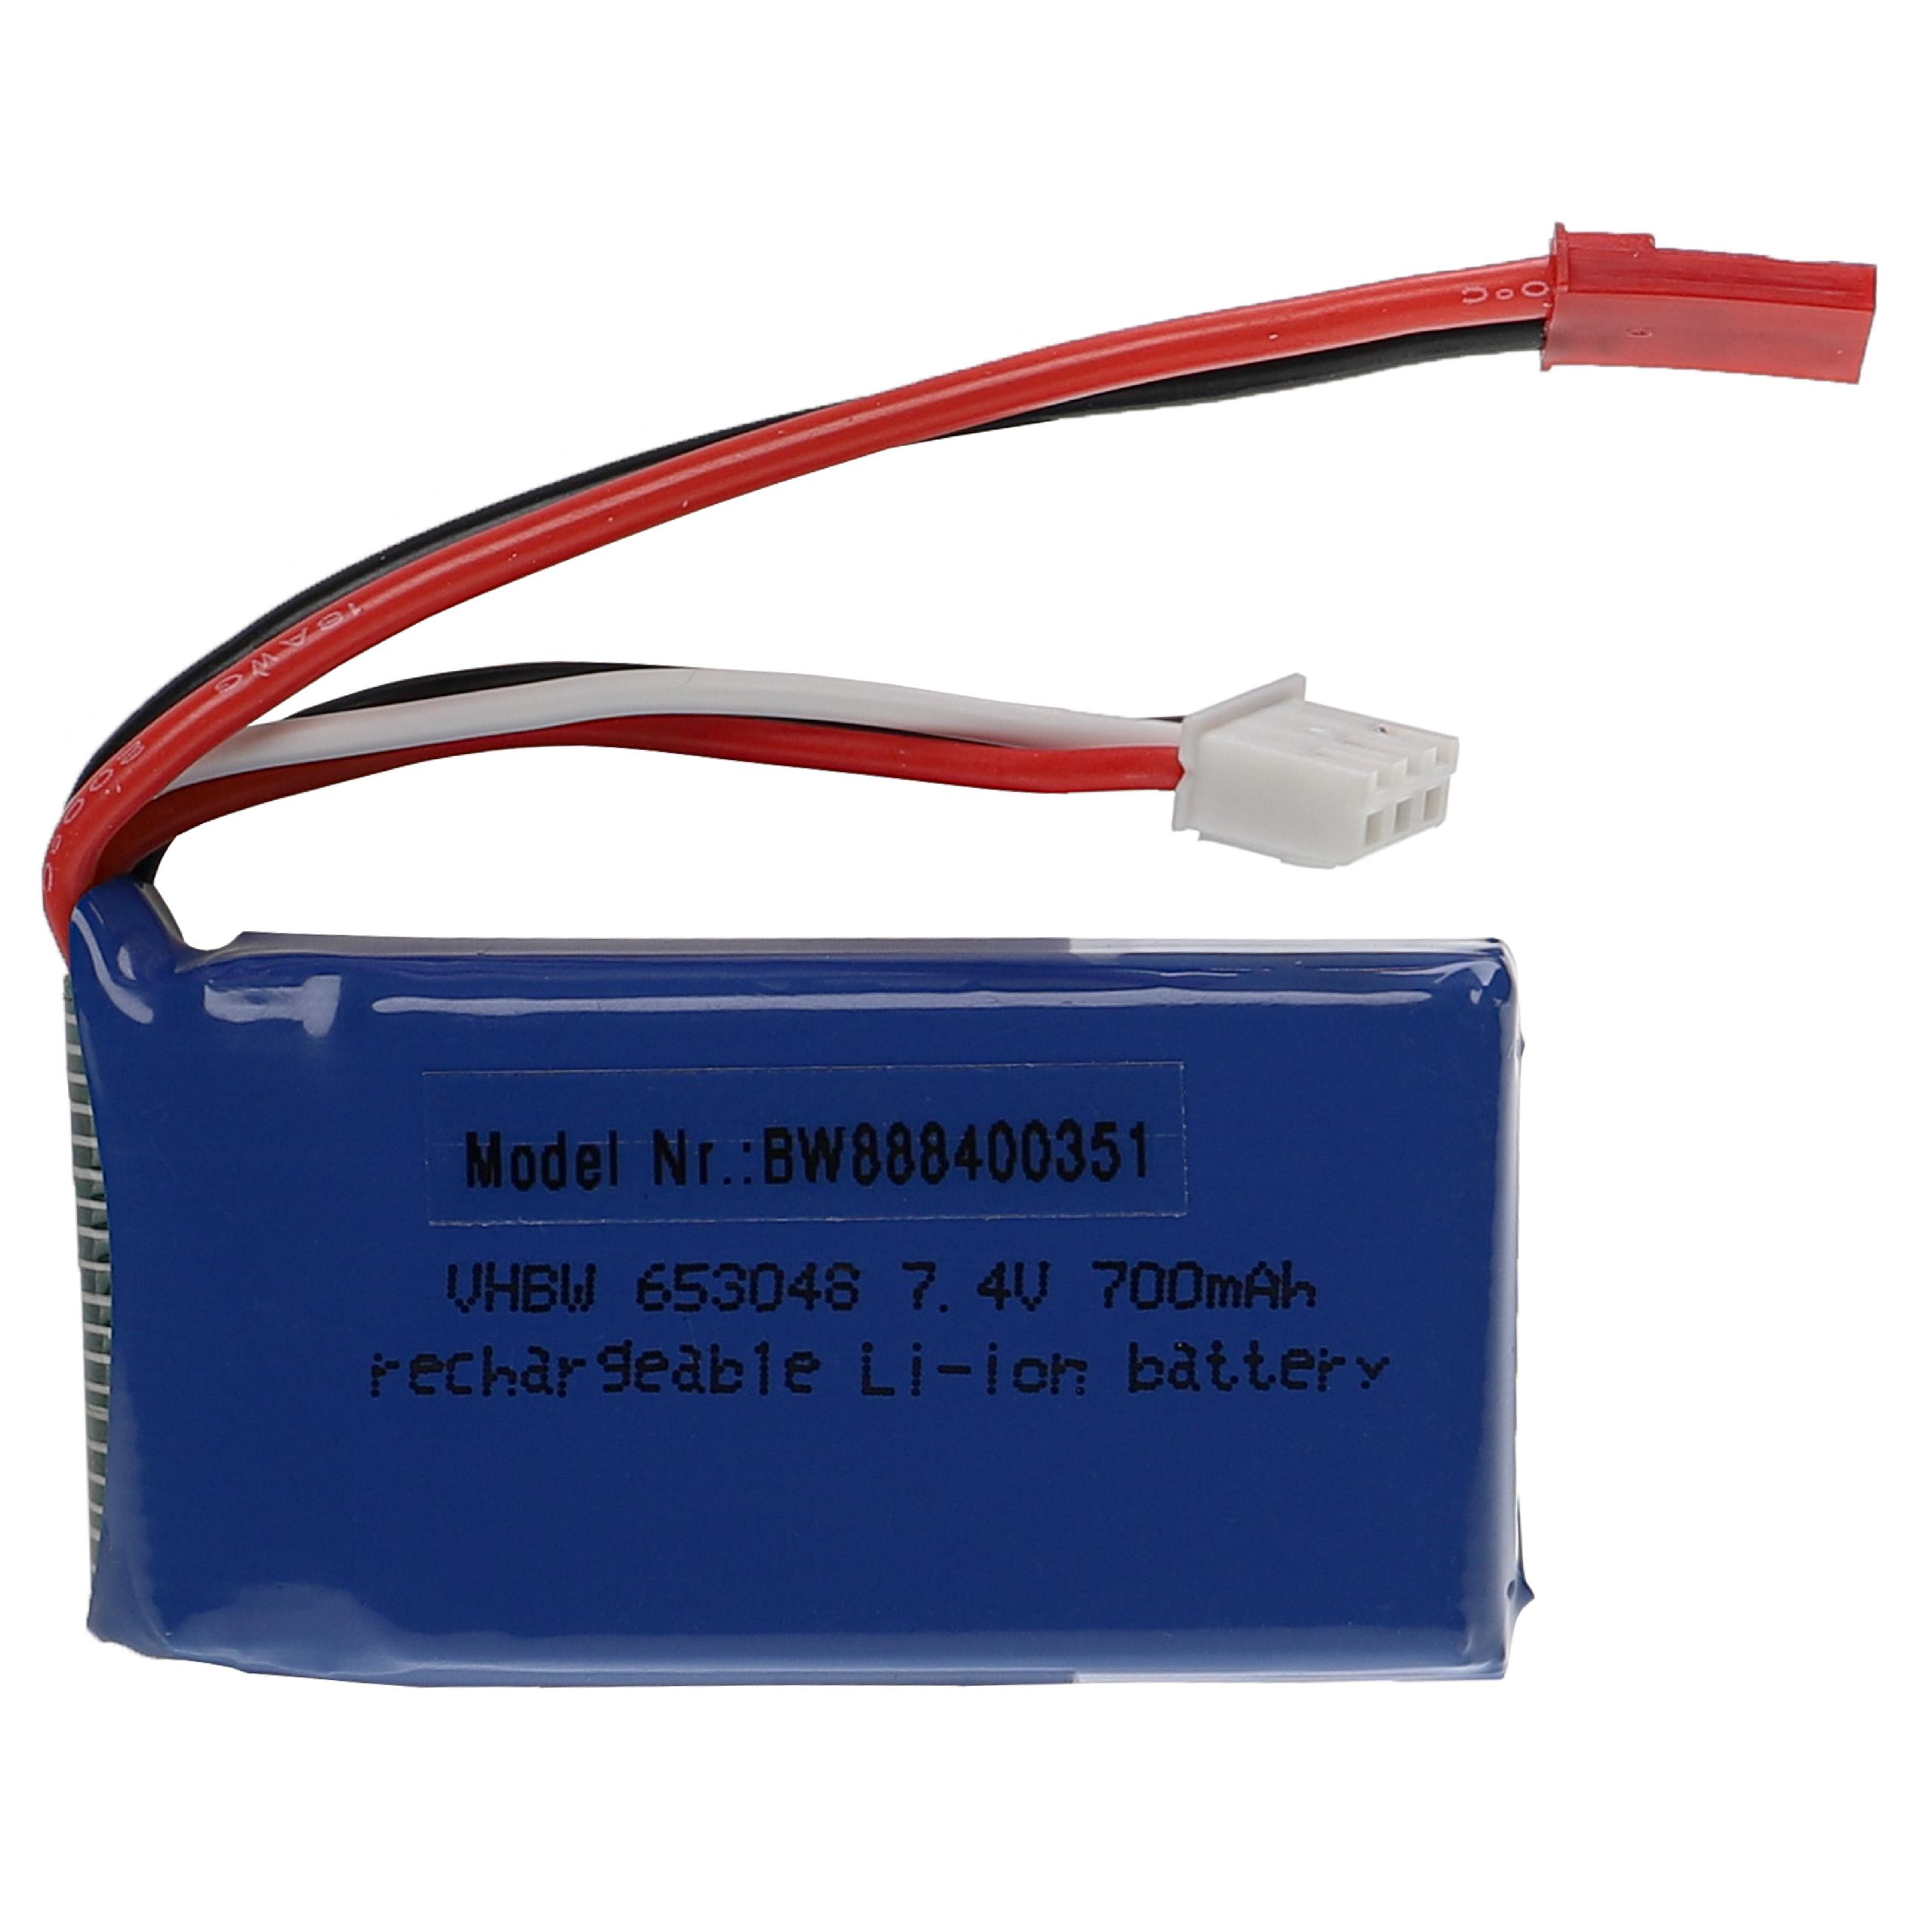 Batterie pour modèle radio-télécommandé - 700mAh 7,4V Li-polymère, BEC